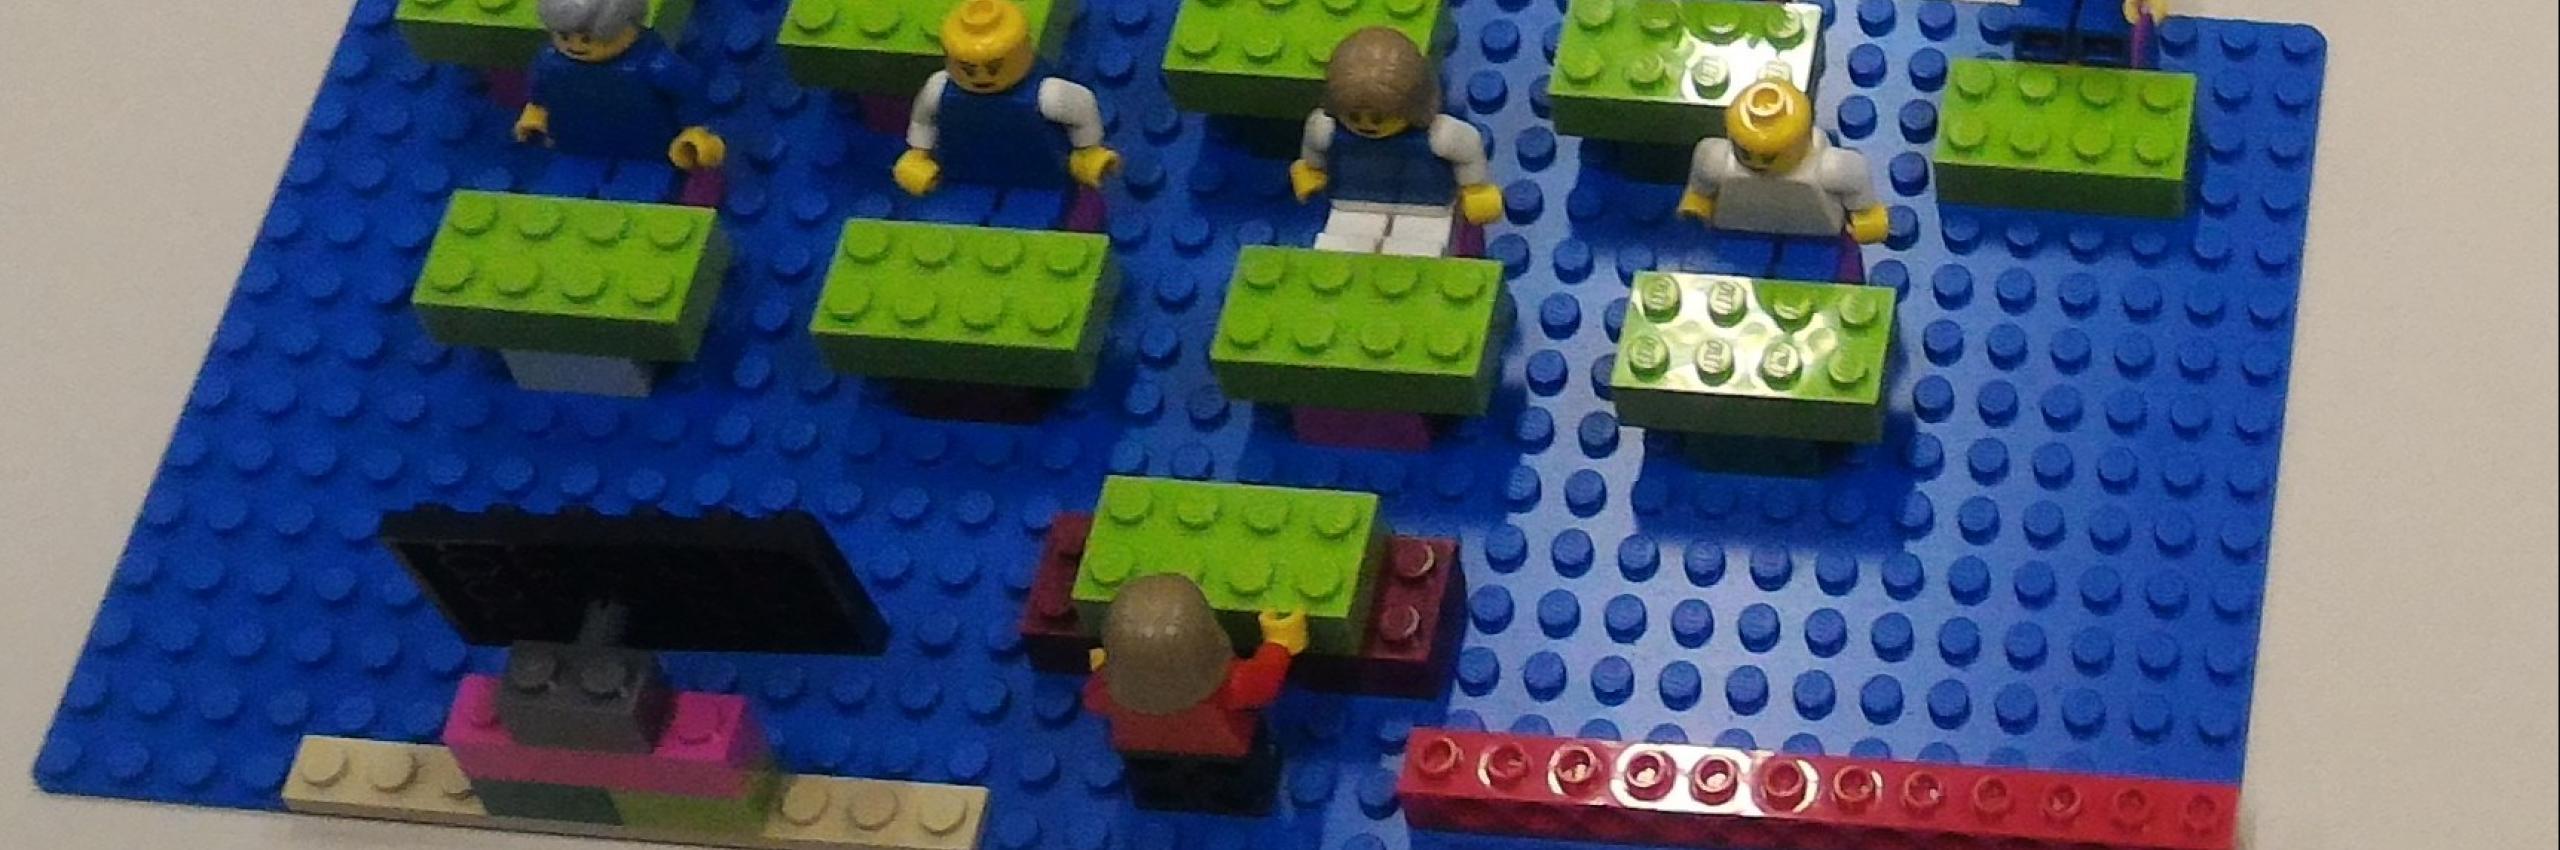 Metodologia Lego Serious Play